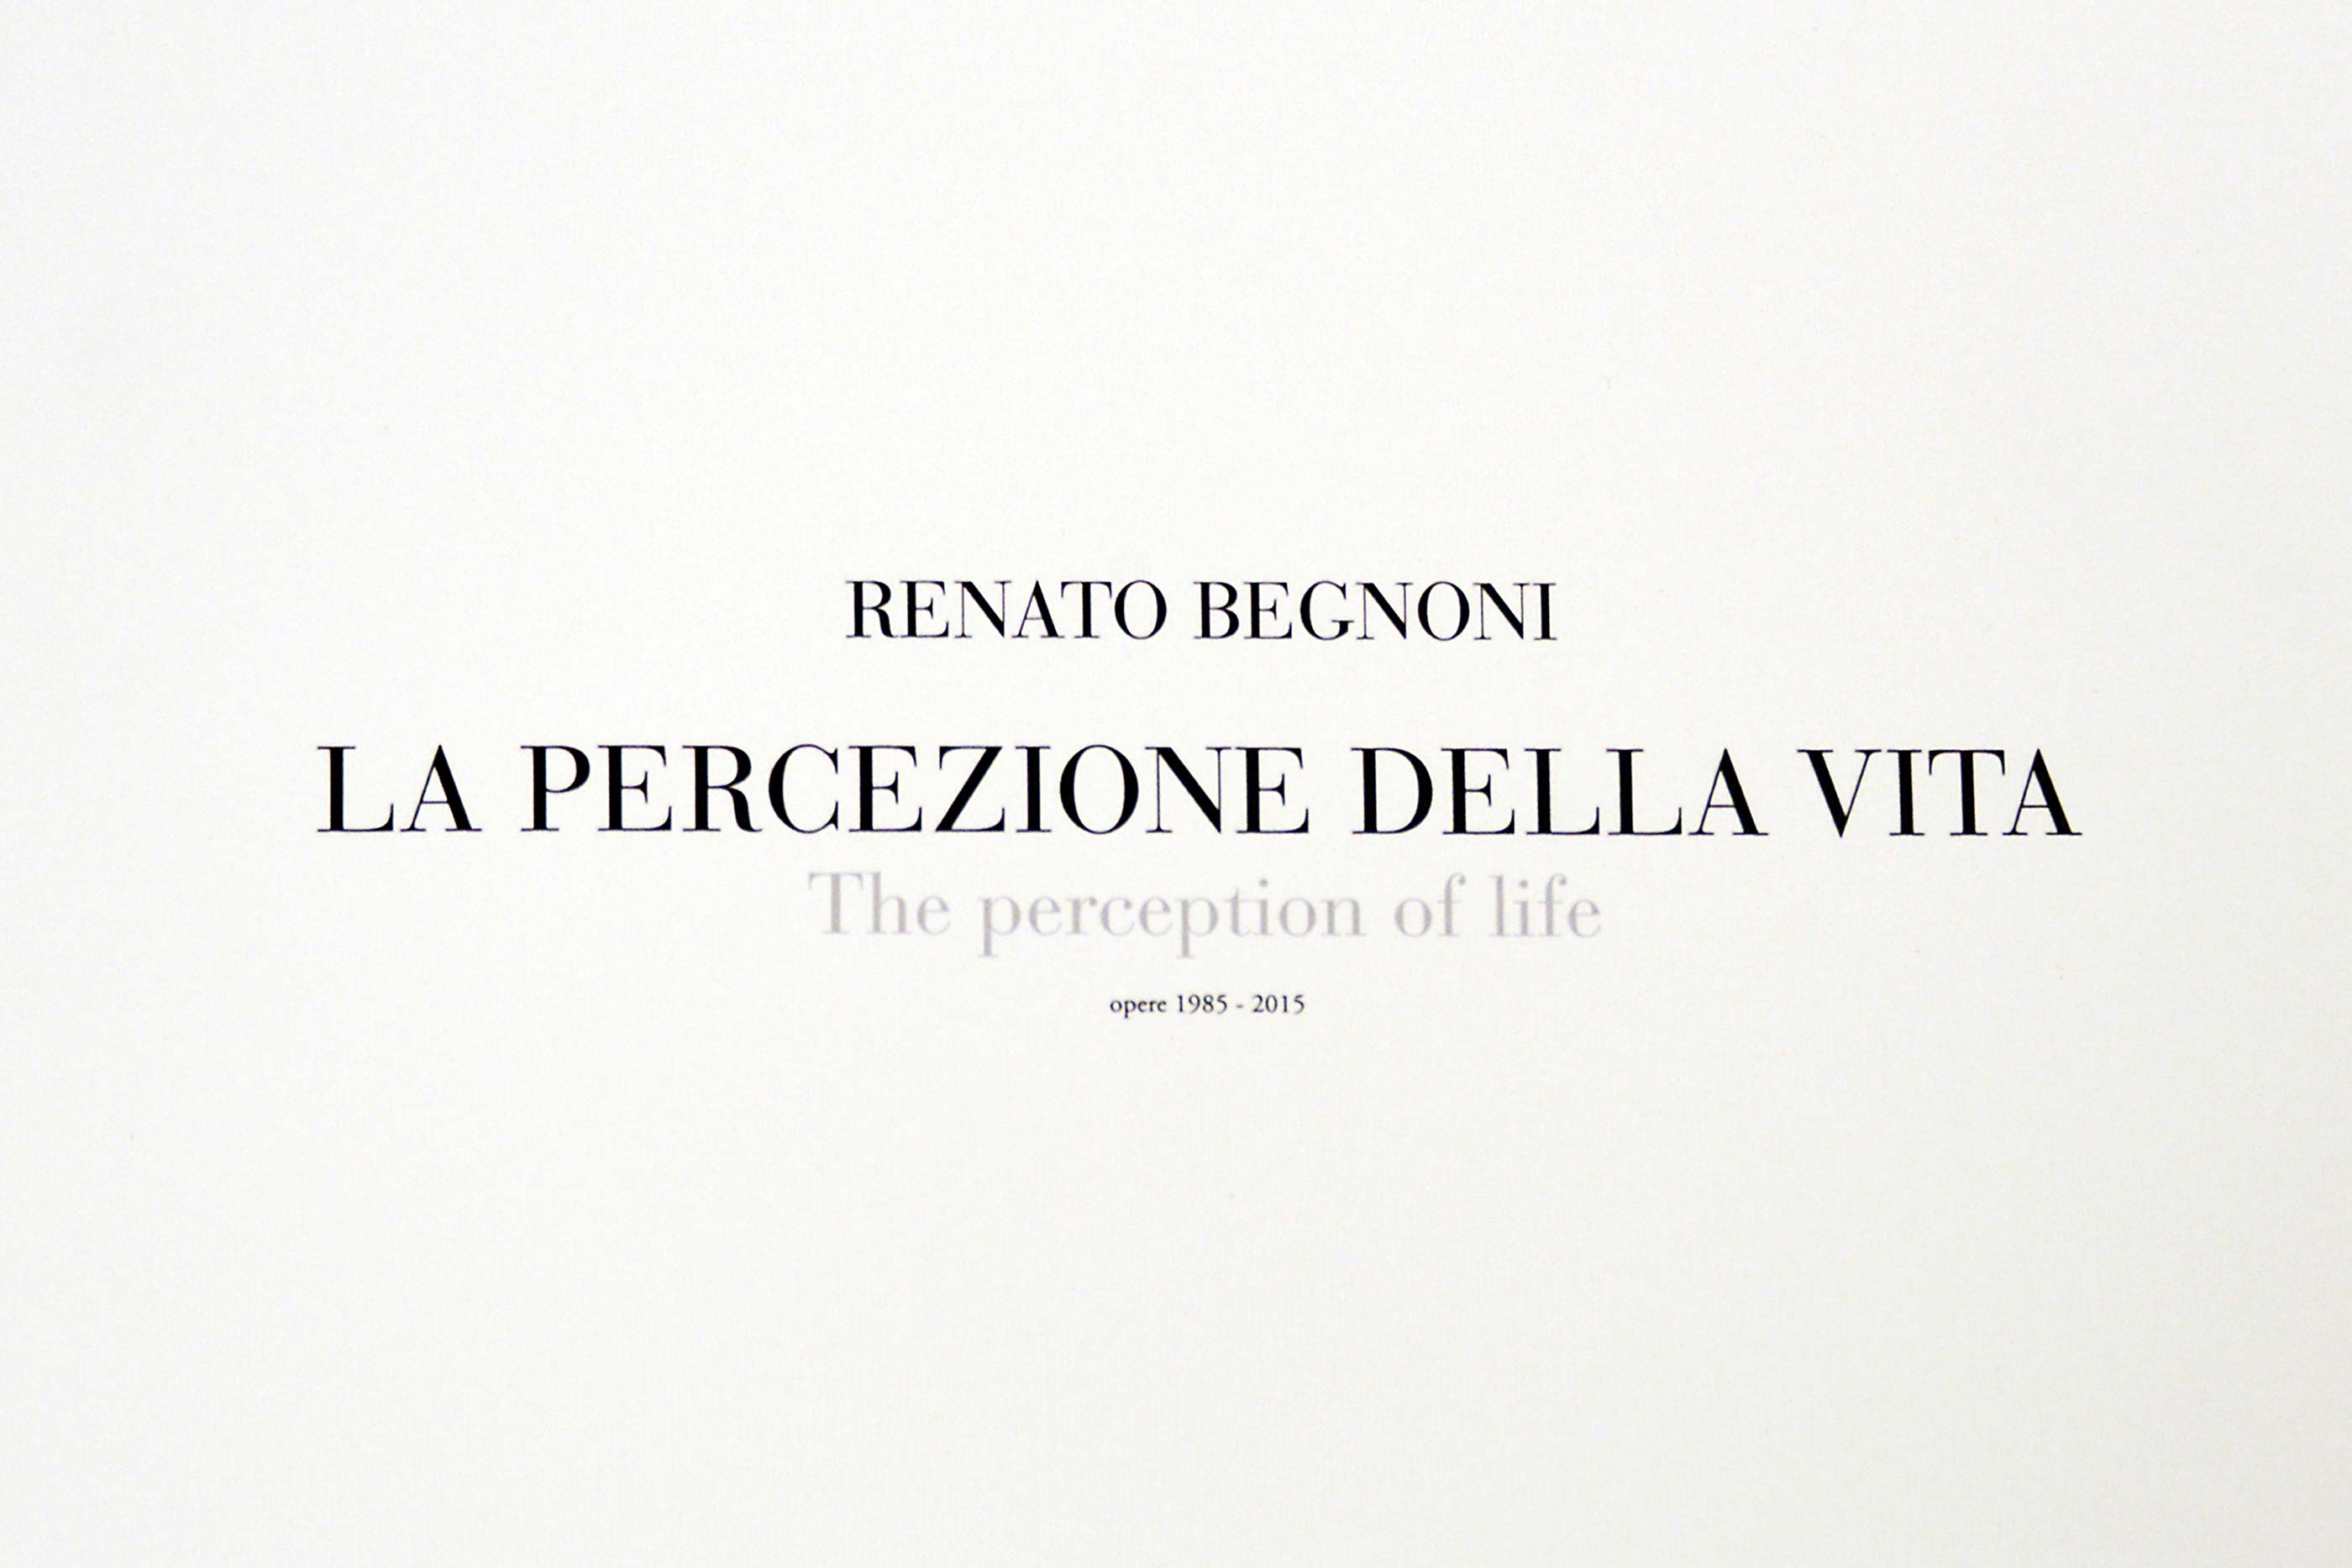 La percezione della vita - Renato Begnoni